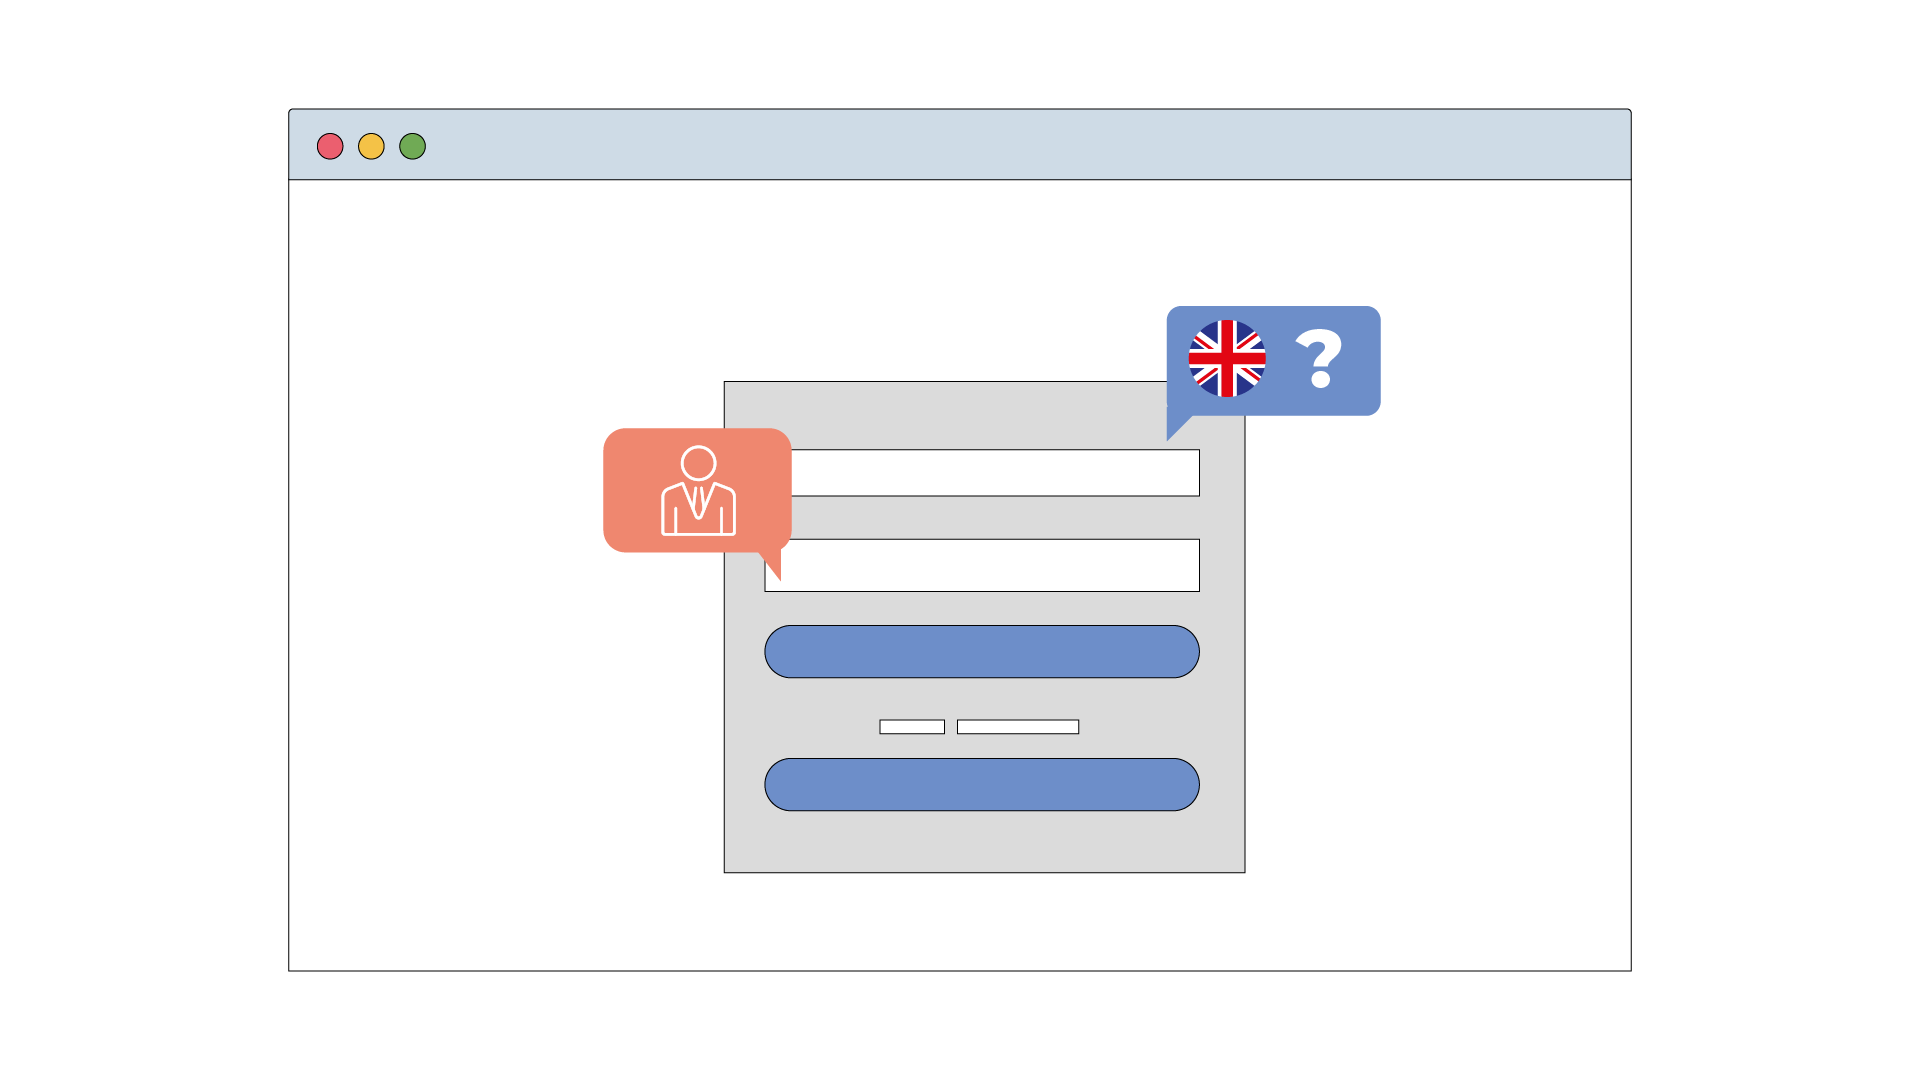 Image d'une interface qui pose des questions à l'utilisateur.